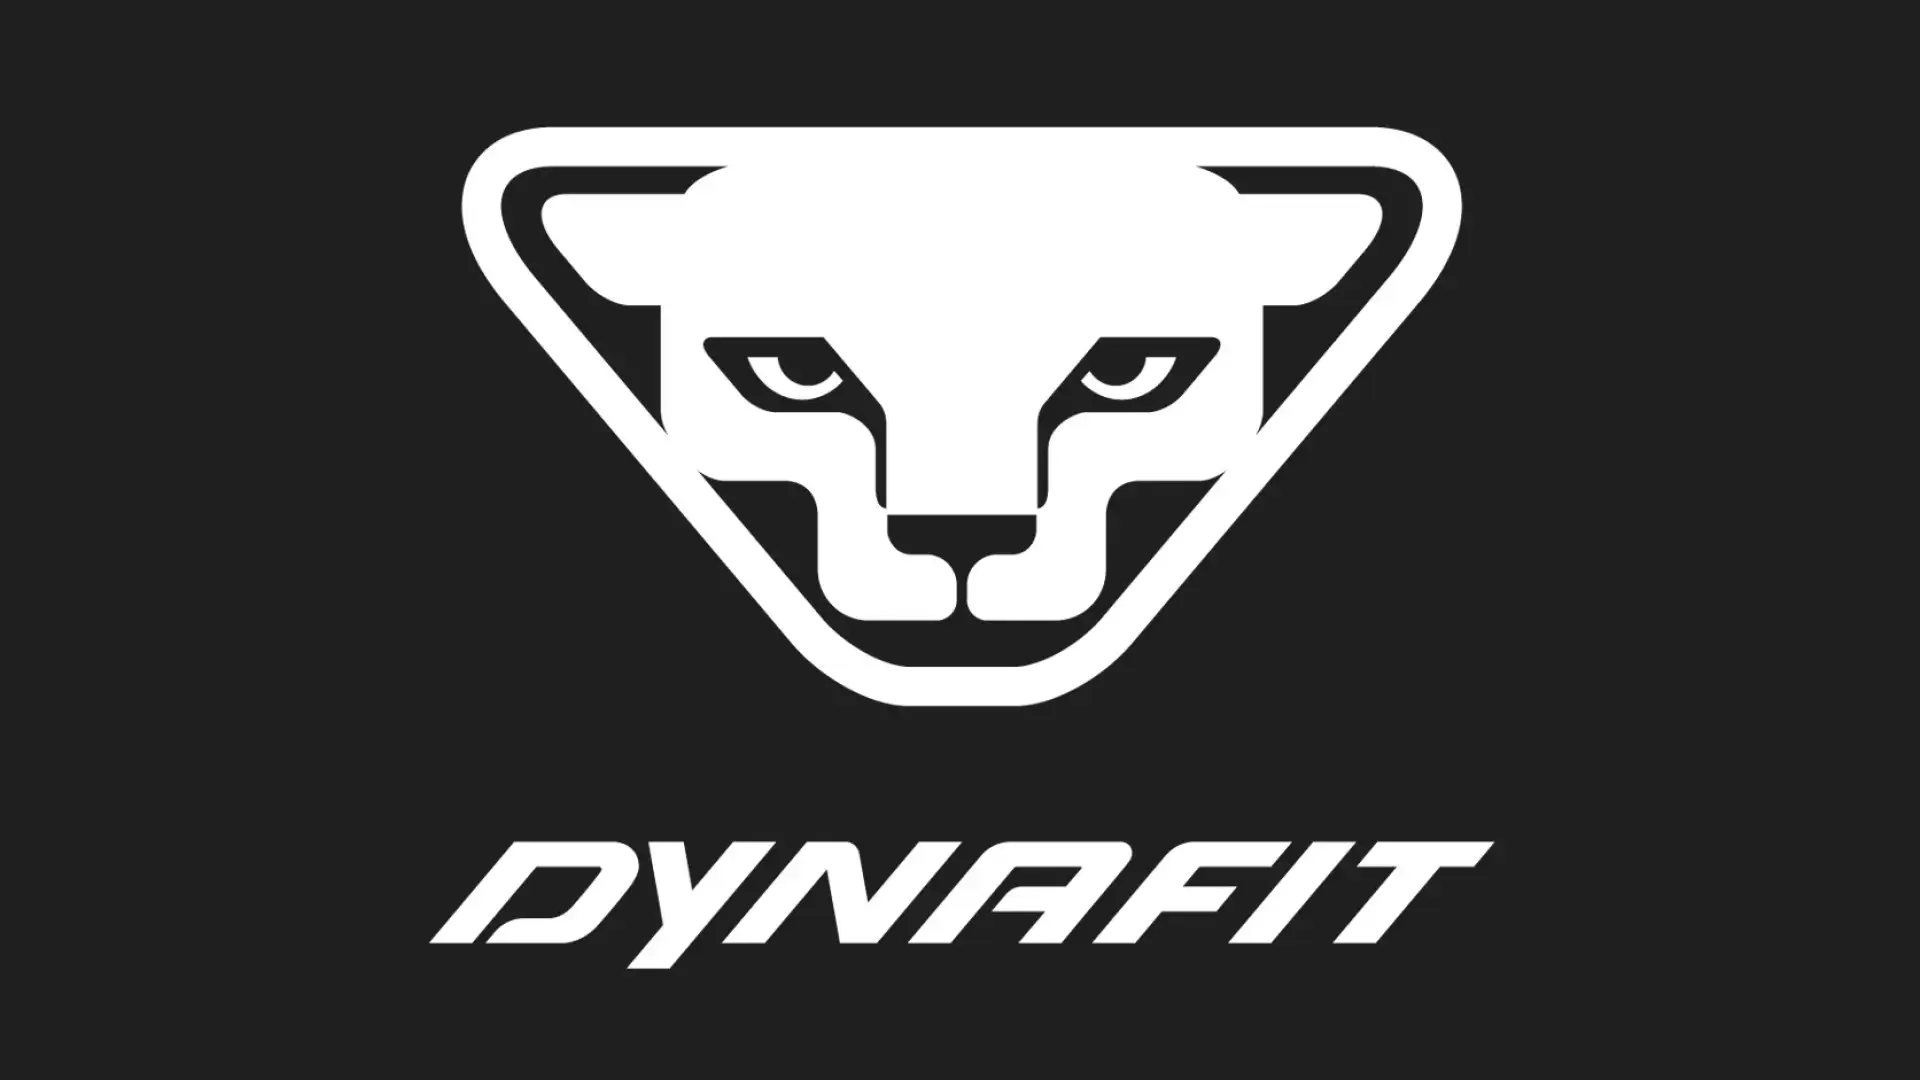 Dynafit přichází s Lifetime Guarantee na 10 let!